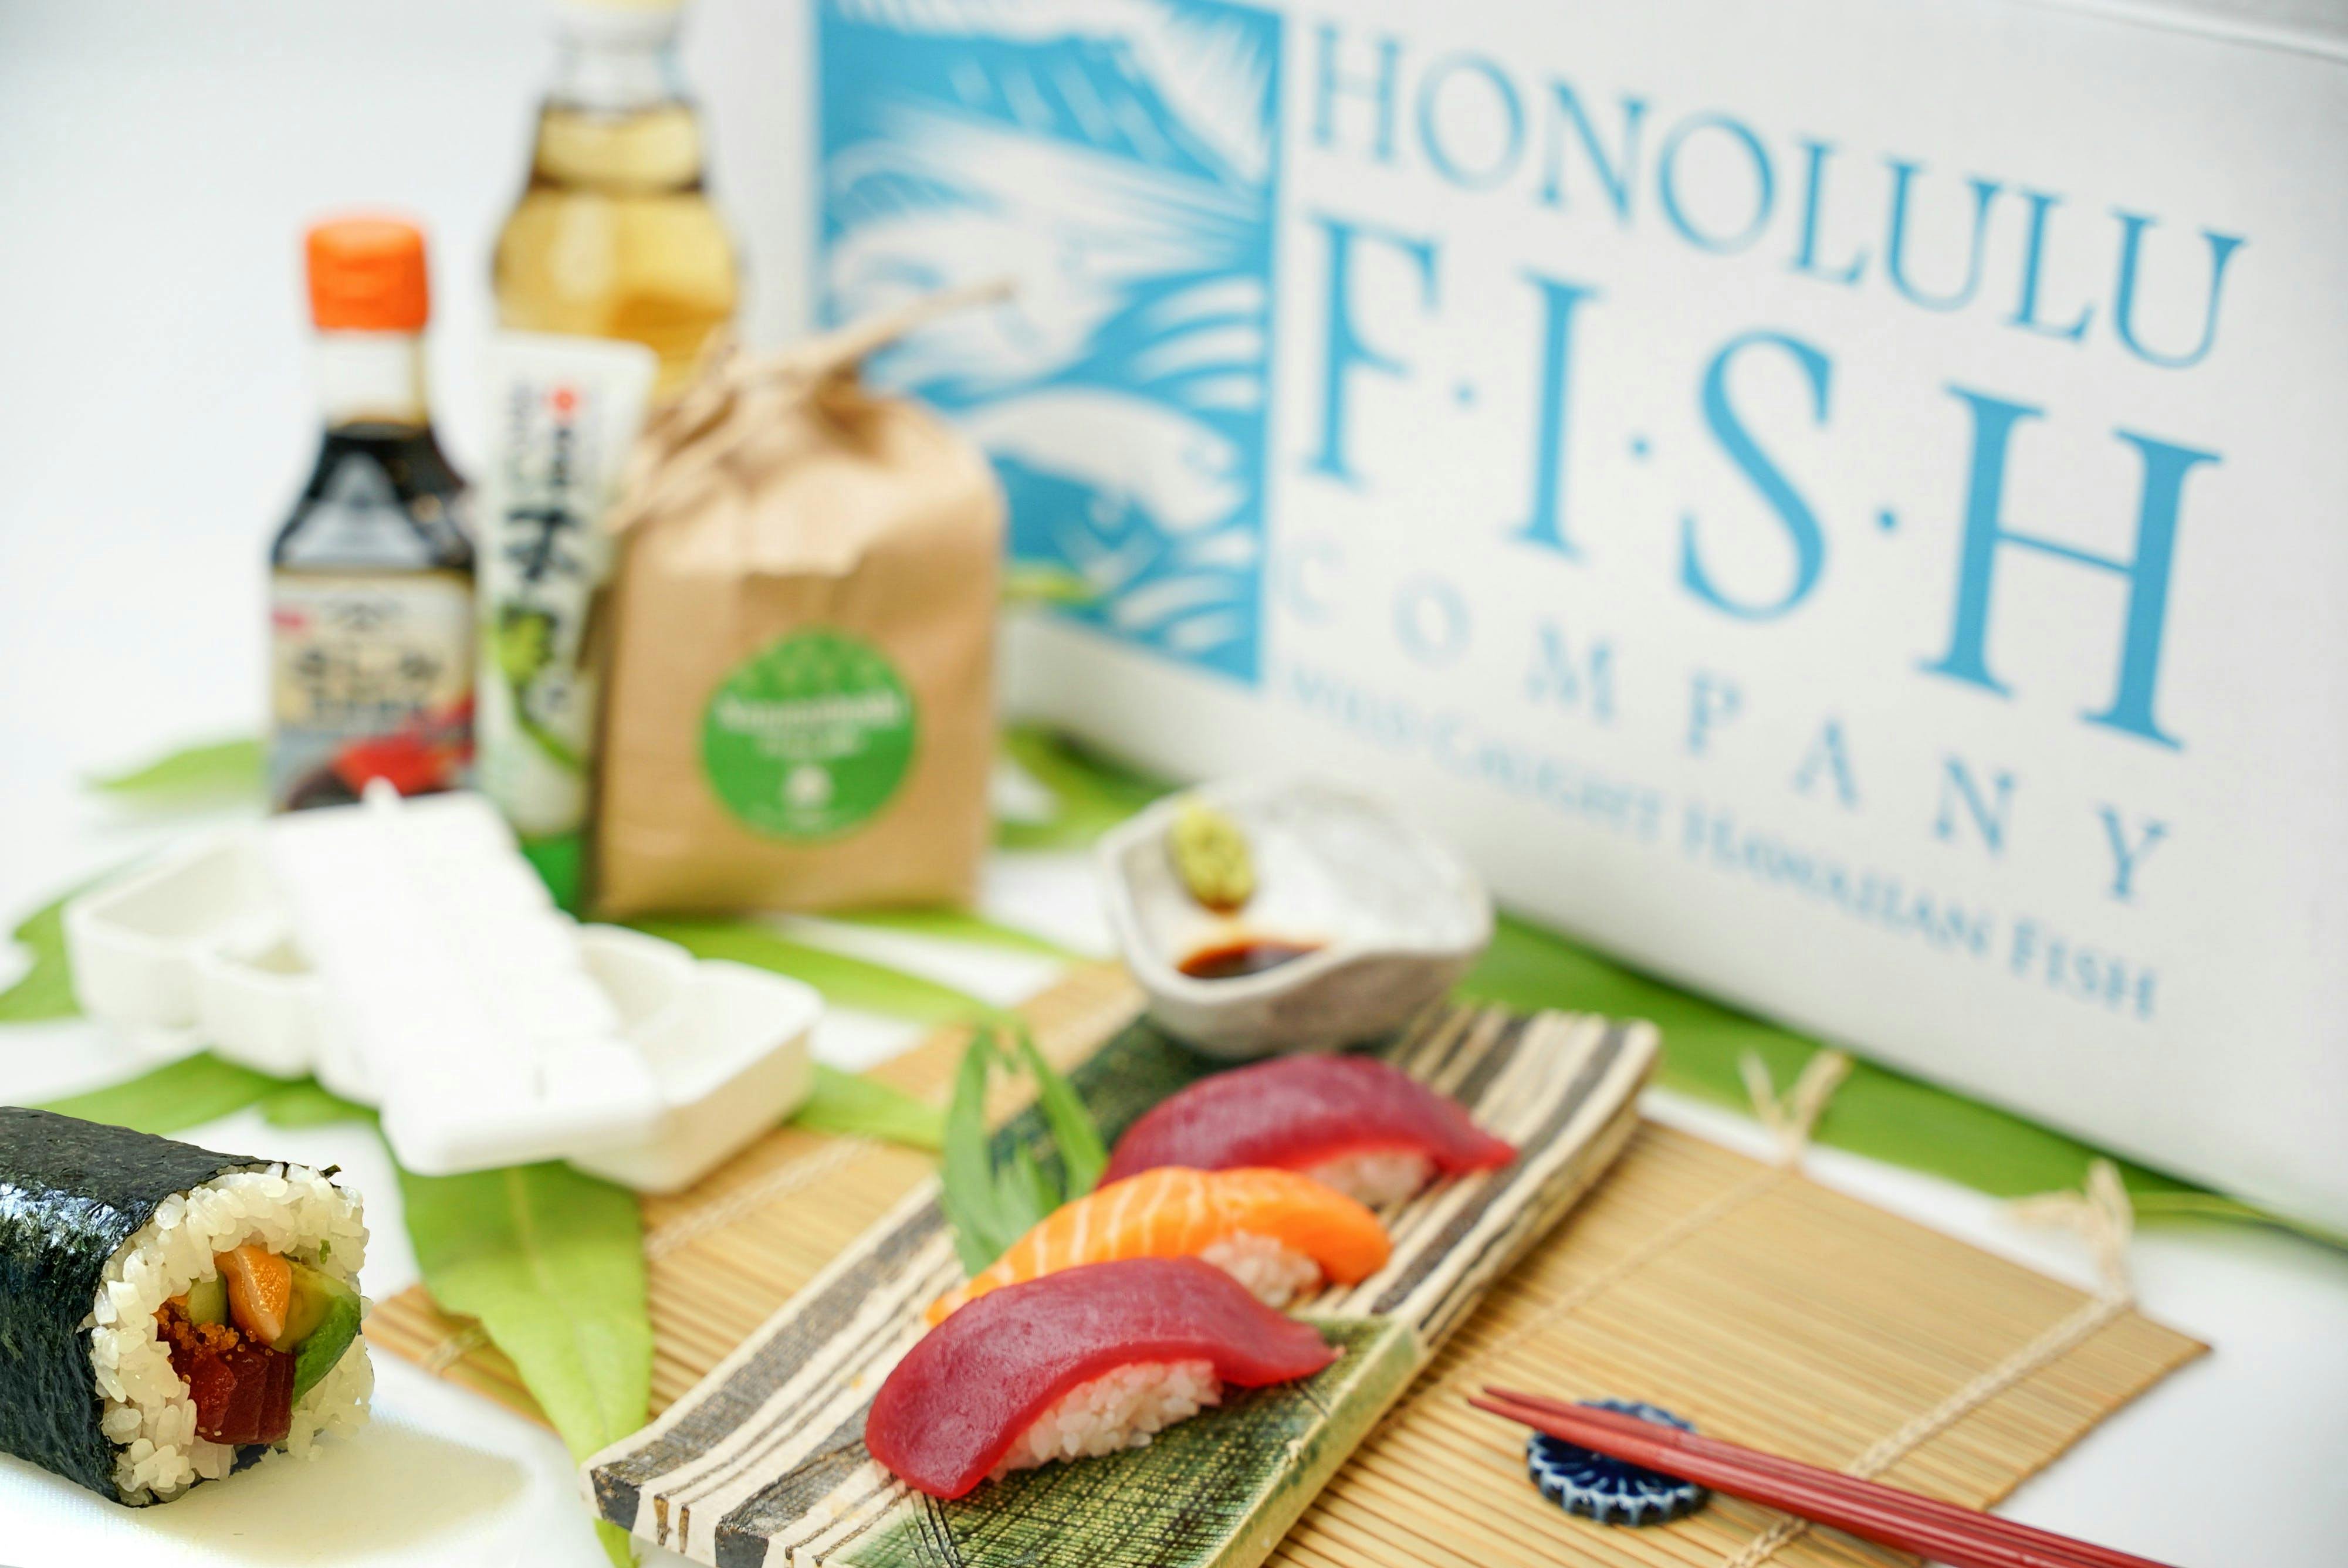 11 Sushi Maker Kit You Need To Make Sushi, Maki, Nigiri & More